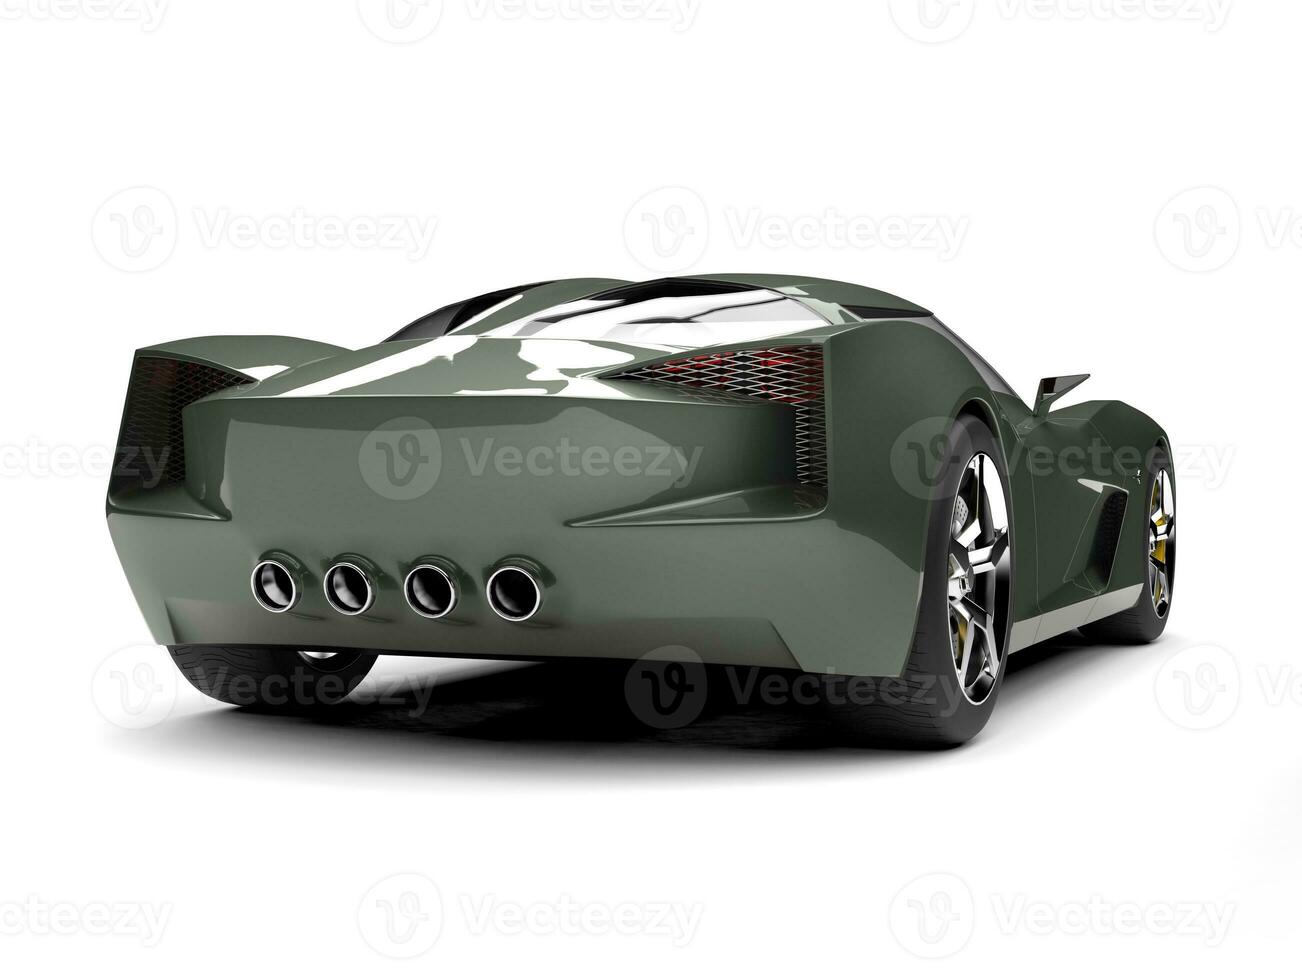 mörk oliv grön sporter begrepp bil - bak- se foto